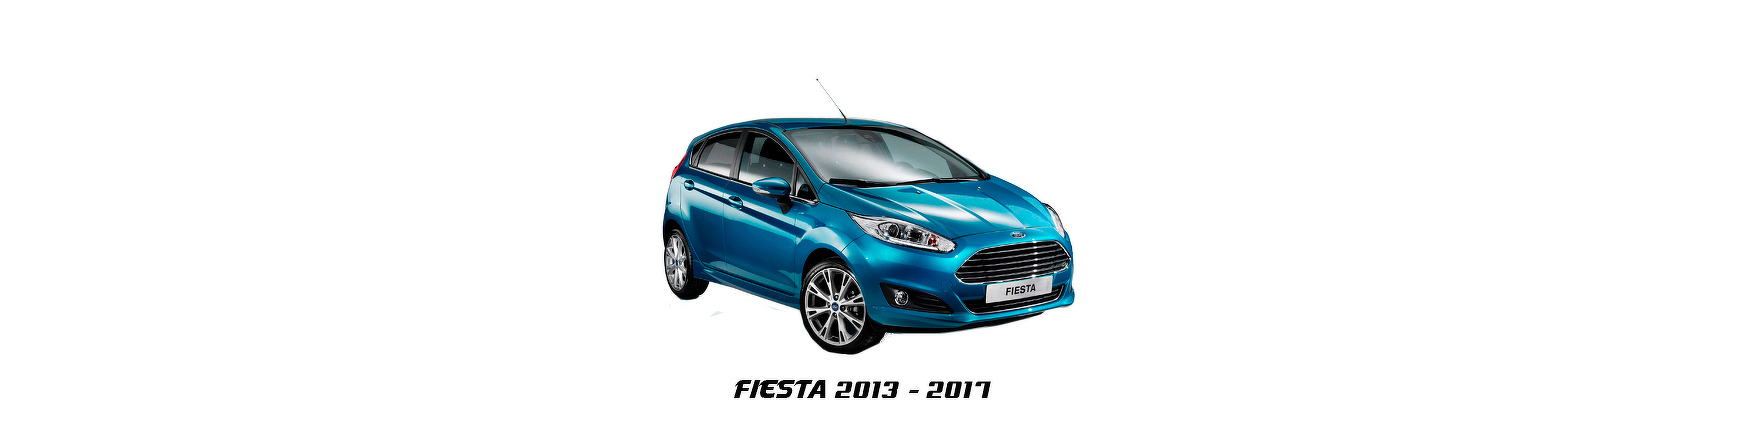 Recambios de Ford Fiesta de 2013, 2014, 2015, 2016, 2017 con envío